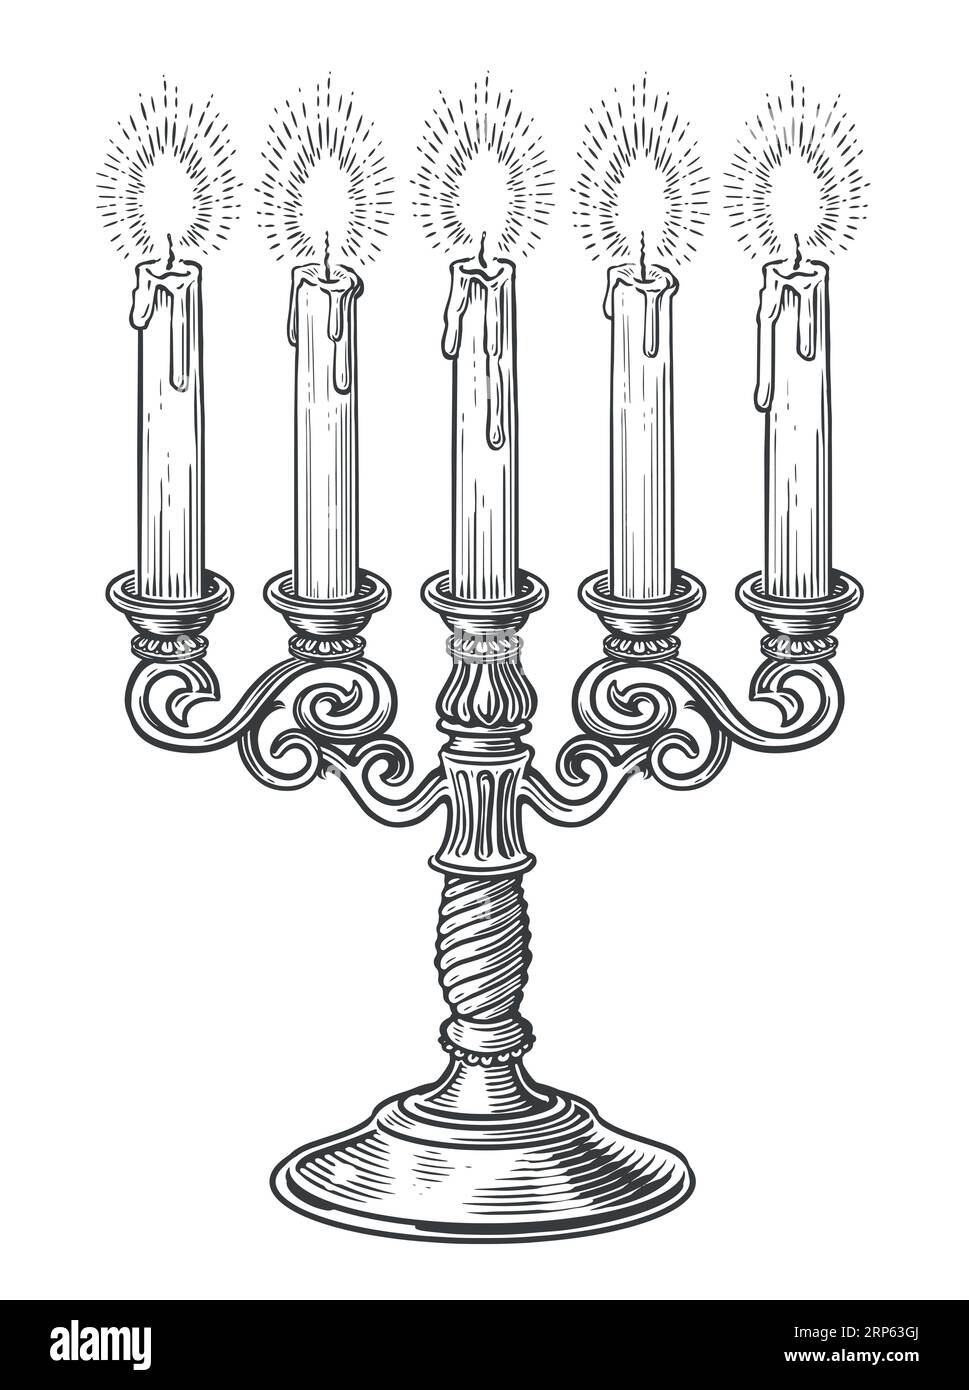 Candélabre en laiton vintage avec cinq bougies allumées dans le style de gravure. Illustration vectorielle d'esquisse de chandelier dessinée à la main Illustration de Vecteur